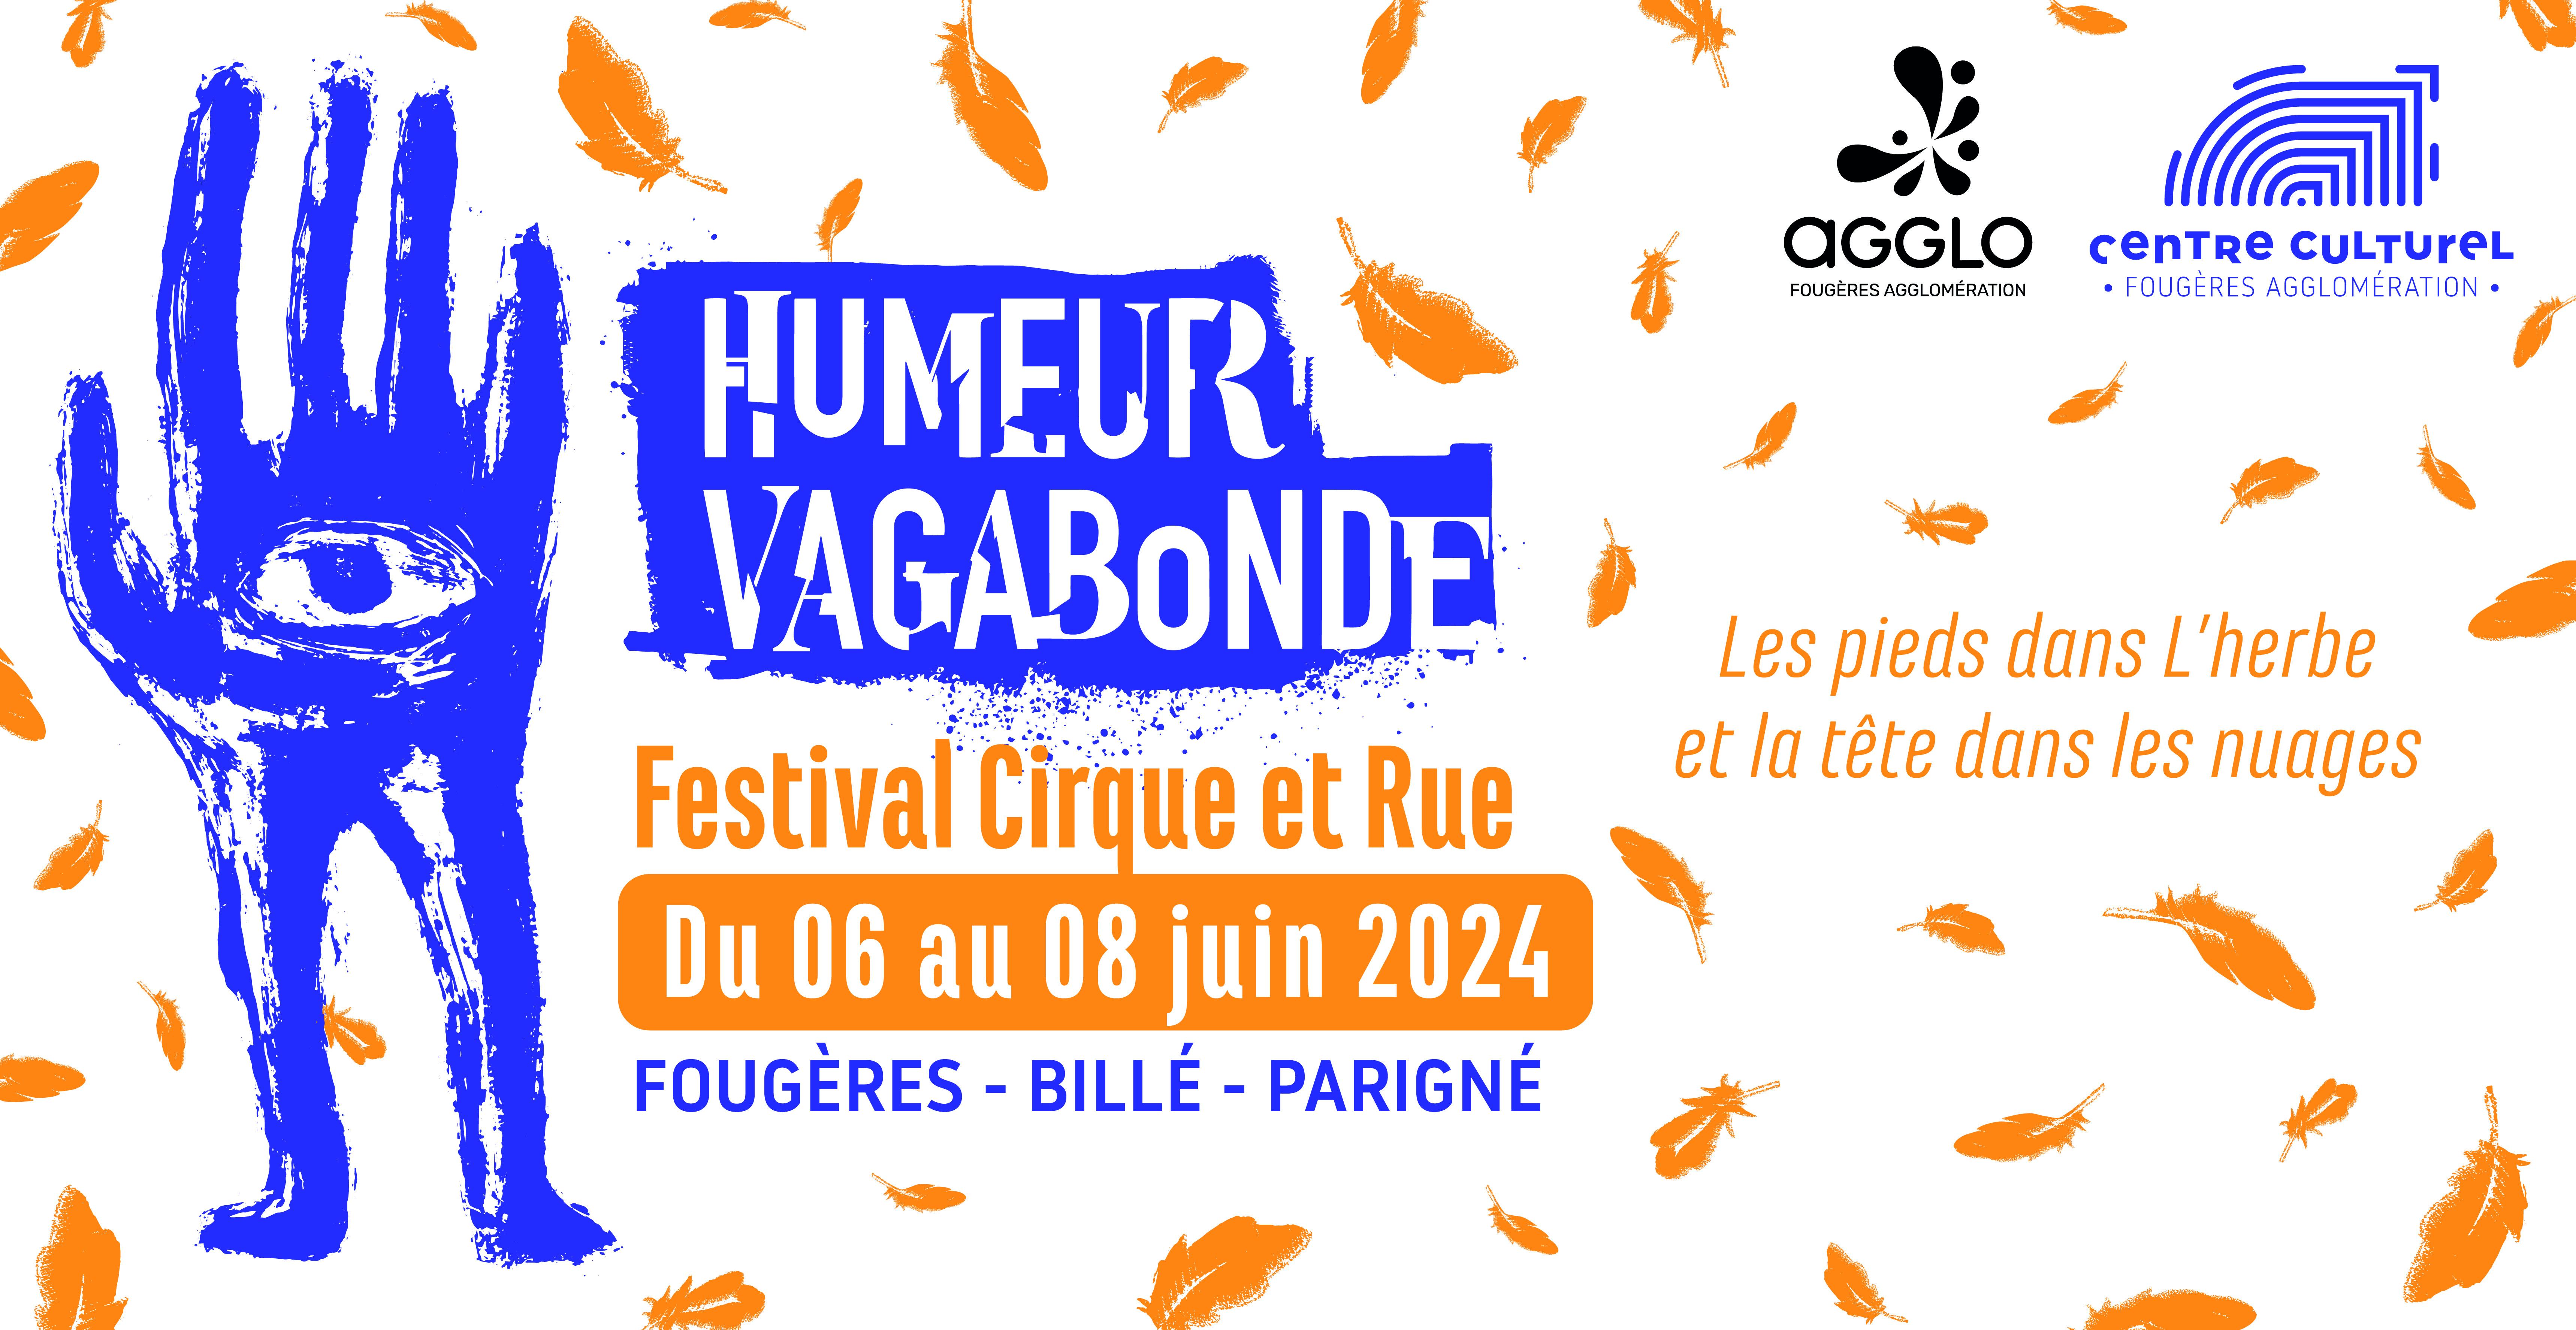 Humeur vagabonde, Festival rue et cirque à Fougères